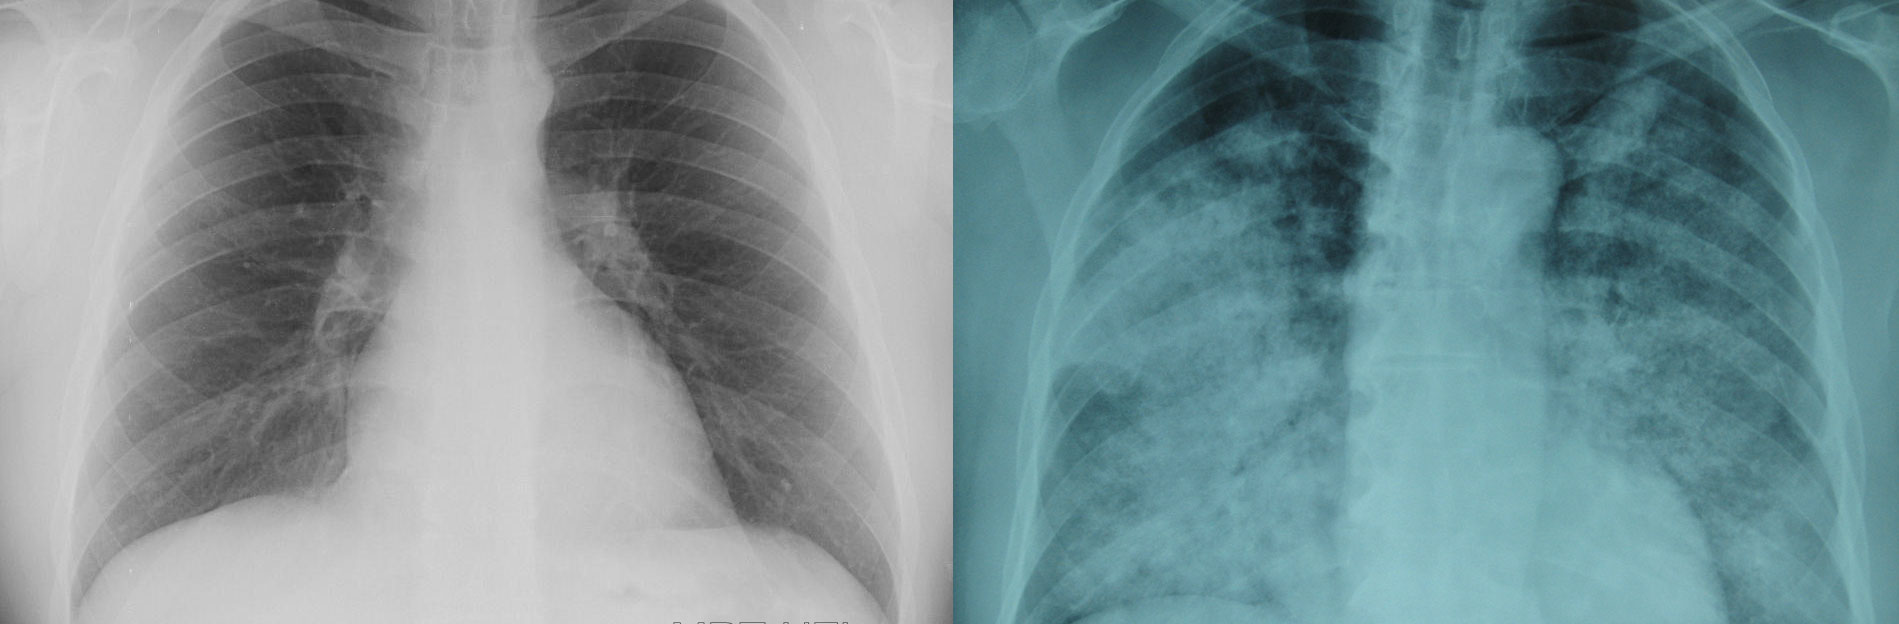 Как различить бронхит и пневмонию по рентгенограмме